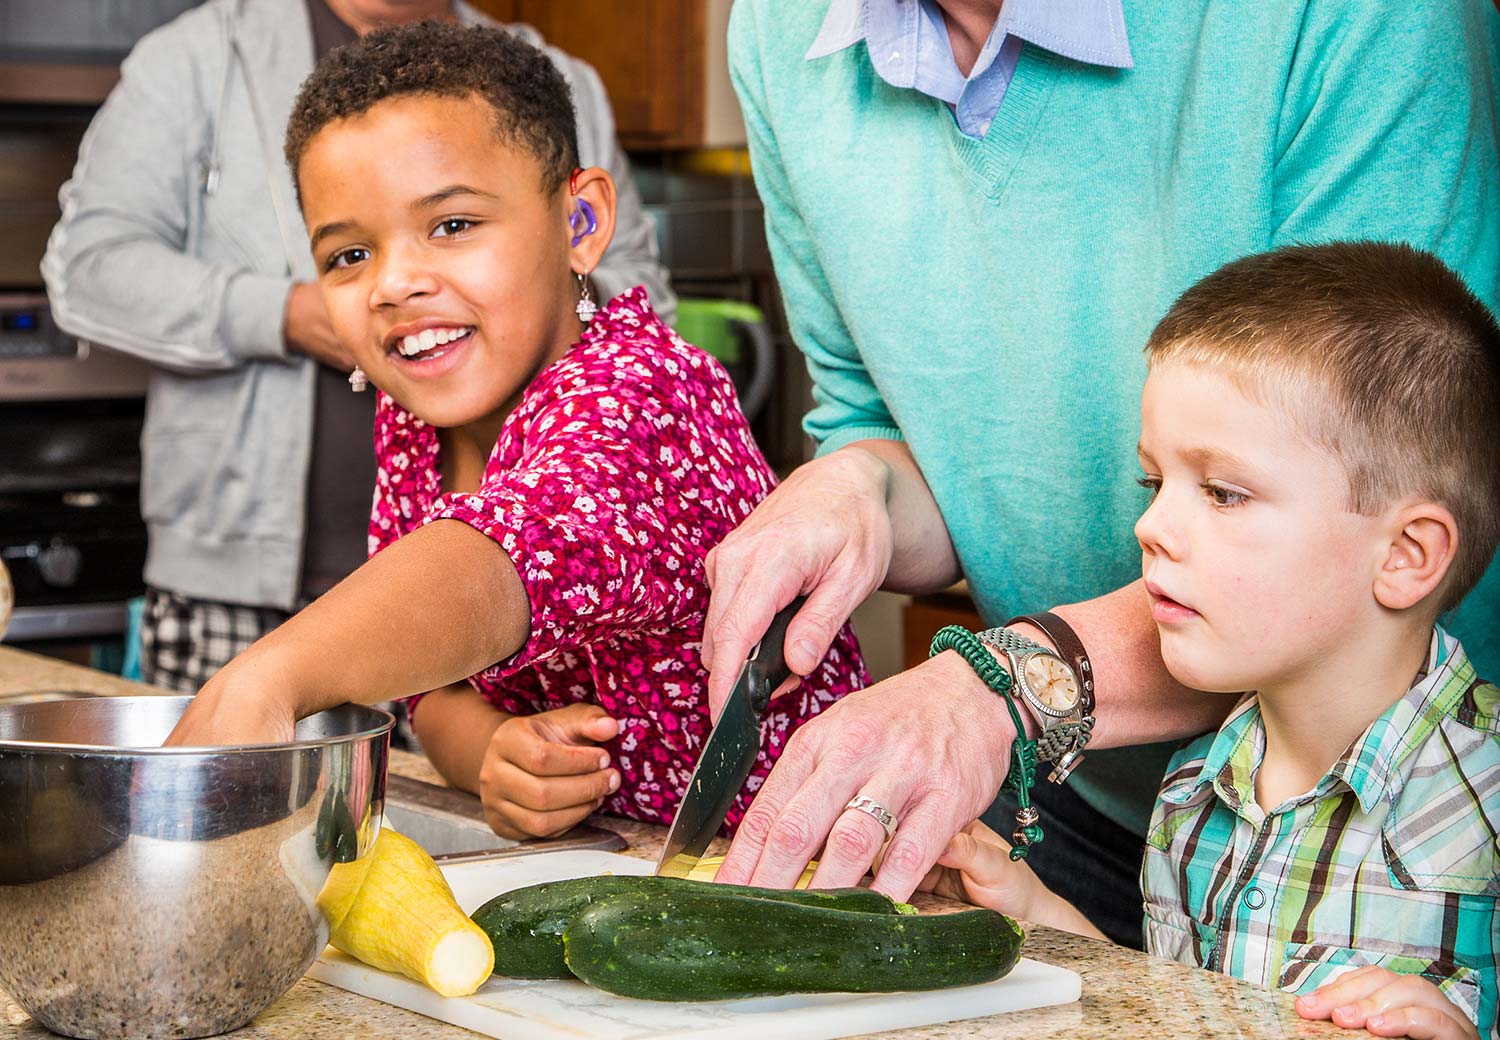 Children helping cook healthy foods